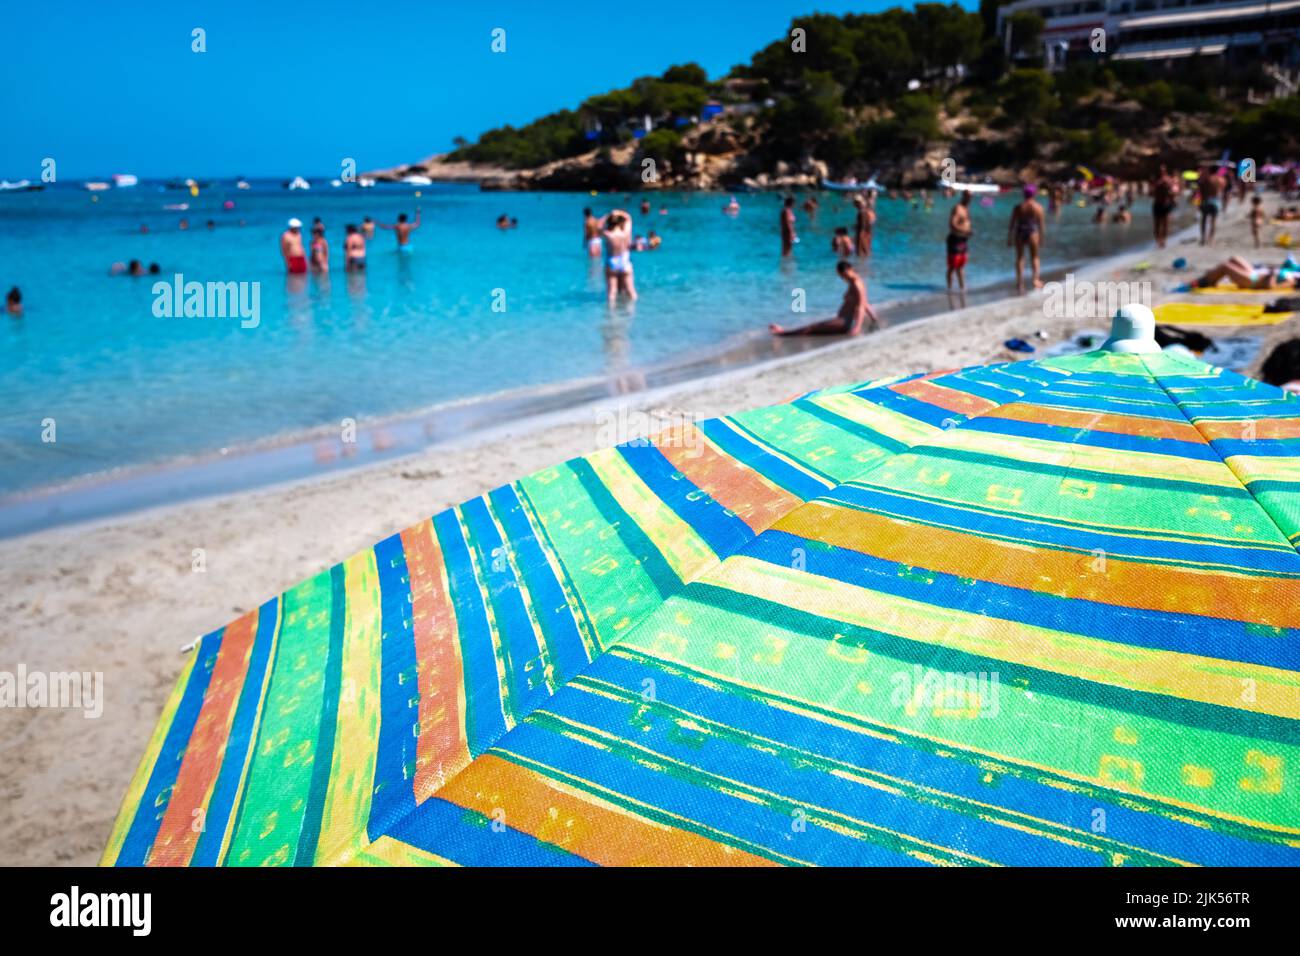 Les vacanciers profitent d'une journée ensoleillée à la plage, un arrière-plan hors du foyer avec parasol en premier plan. Banque D'Images